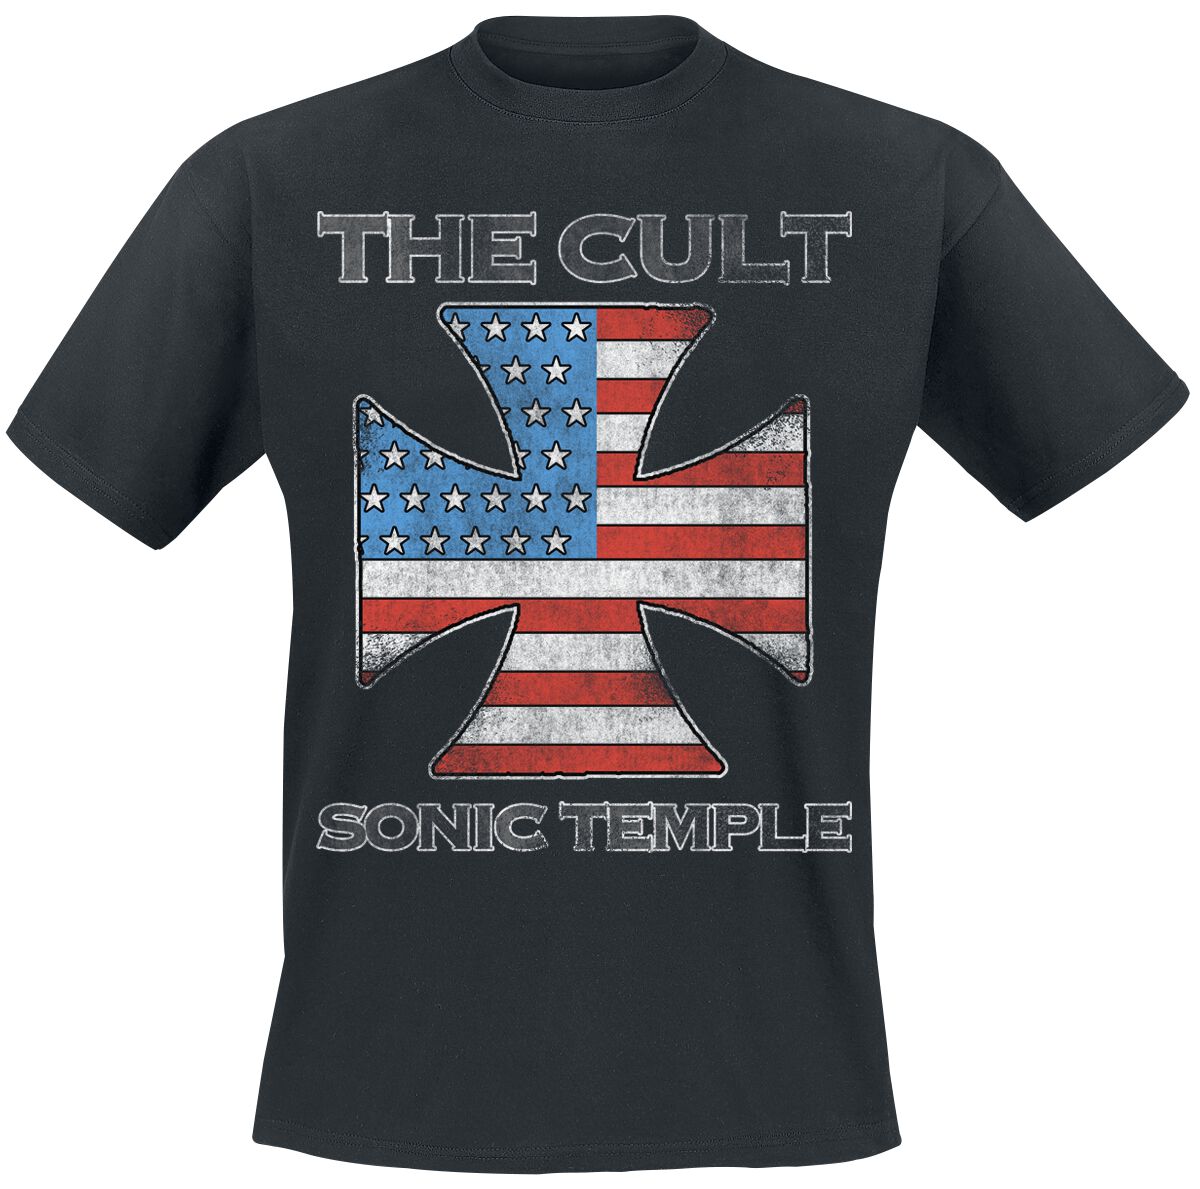 The Cult T-Shirt - US IRON CROSS - S bis 4XL - für Männer - Größe L - schwarz  - Lizenziertes Merchandise!